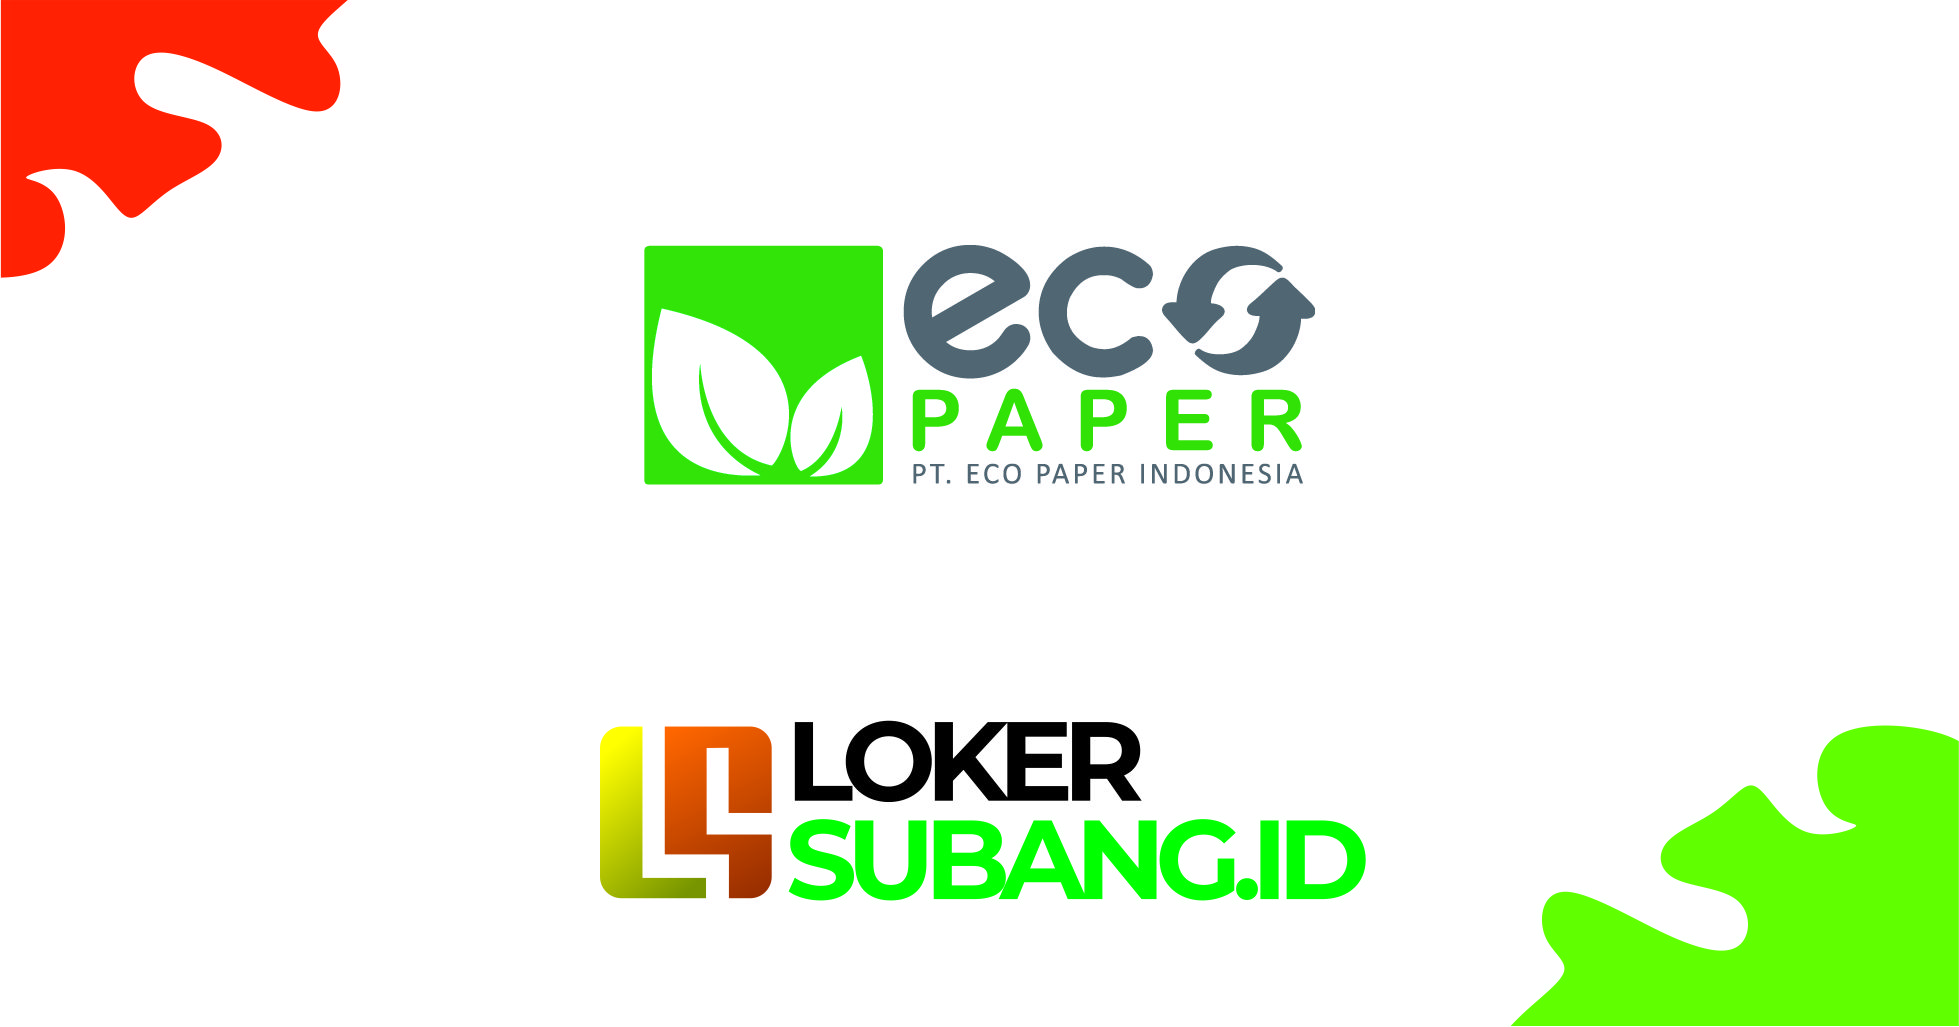 PT Eco paper Indonesia